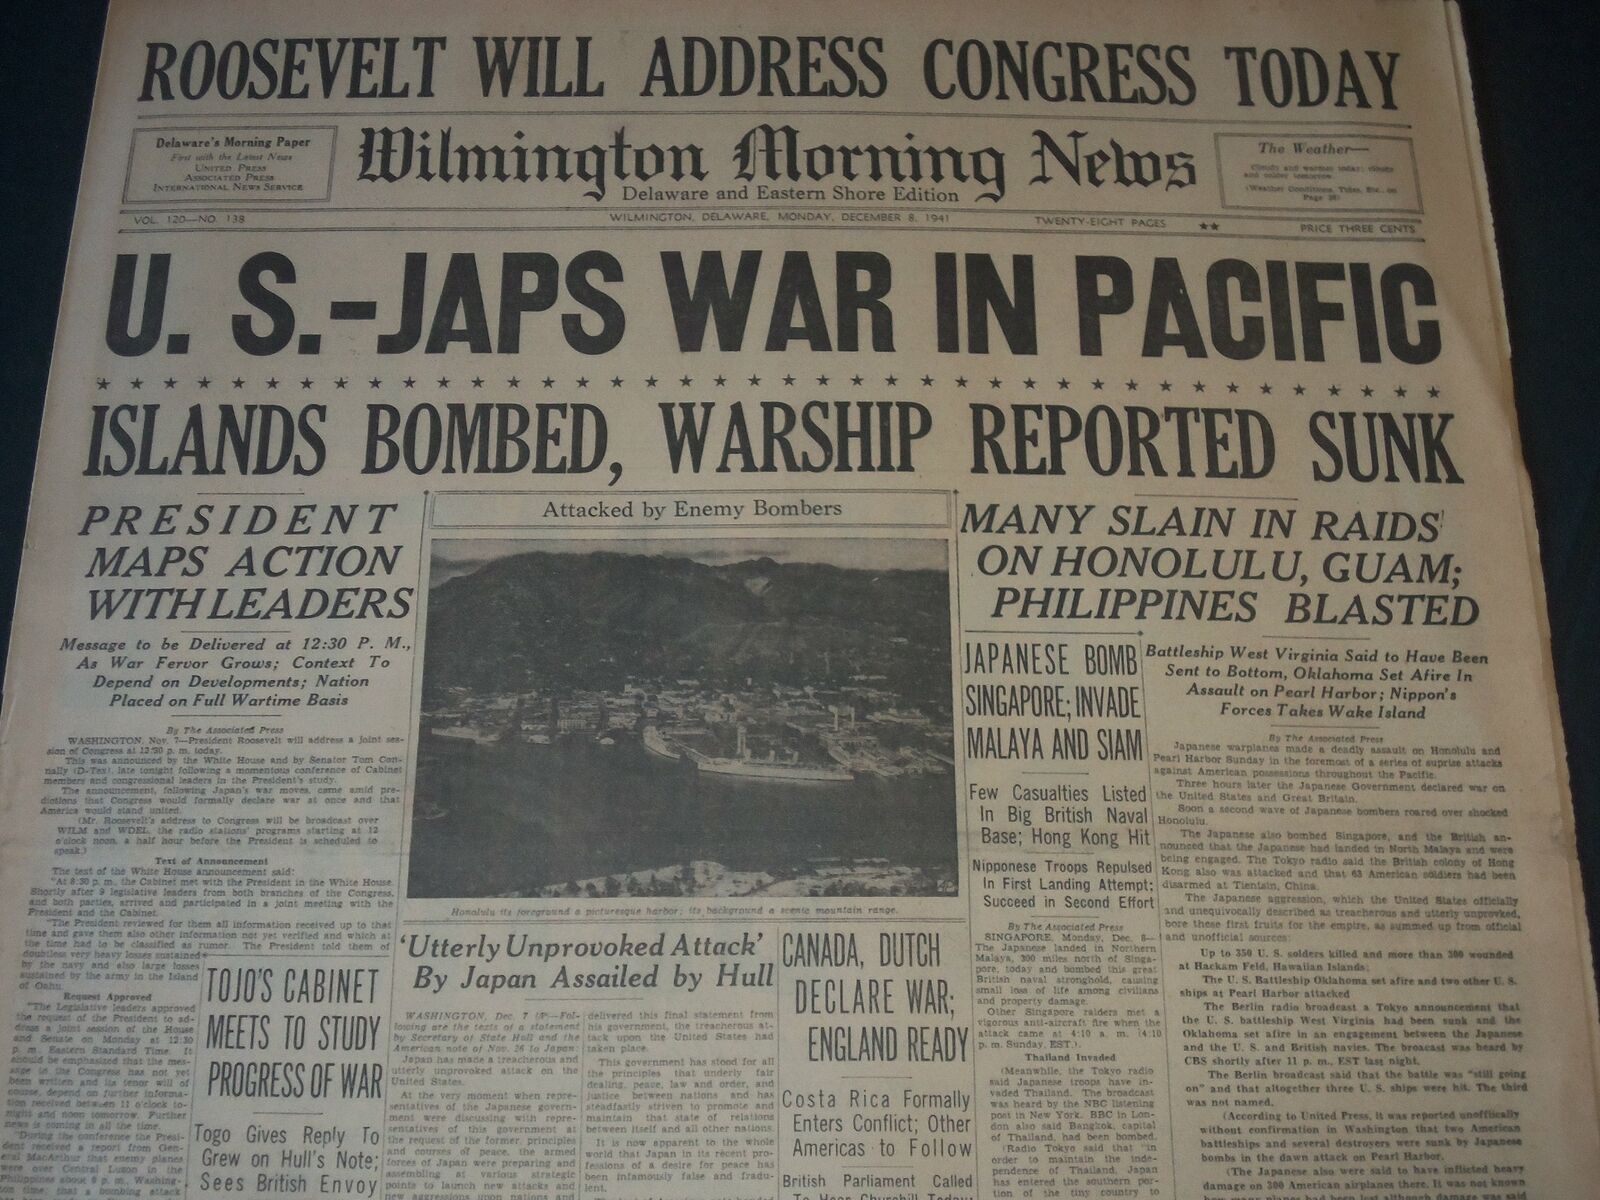 1941 DECEMBER 8 WILMINGTON NEWS NEWSPAPER - U. S. JAPS WAR IN PACIFIC - NT 7283